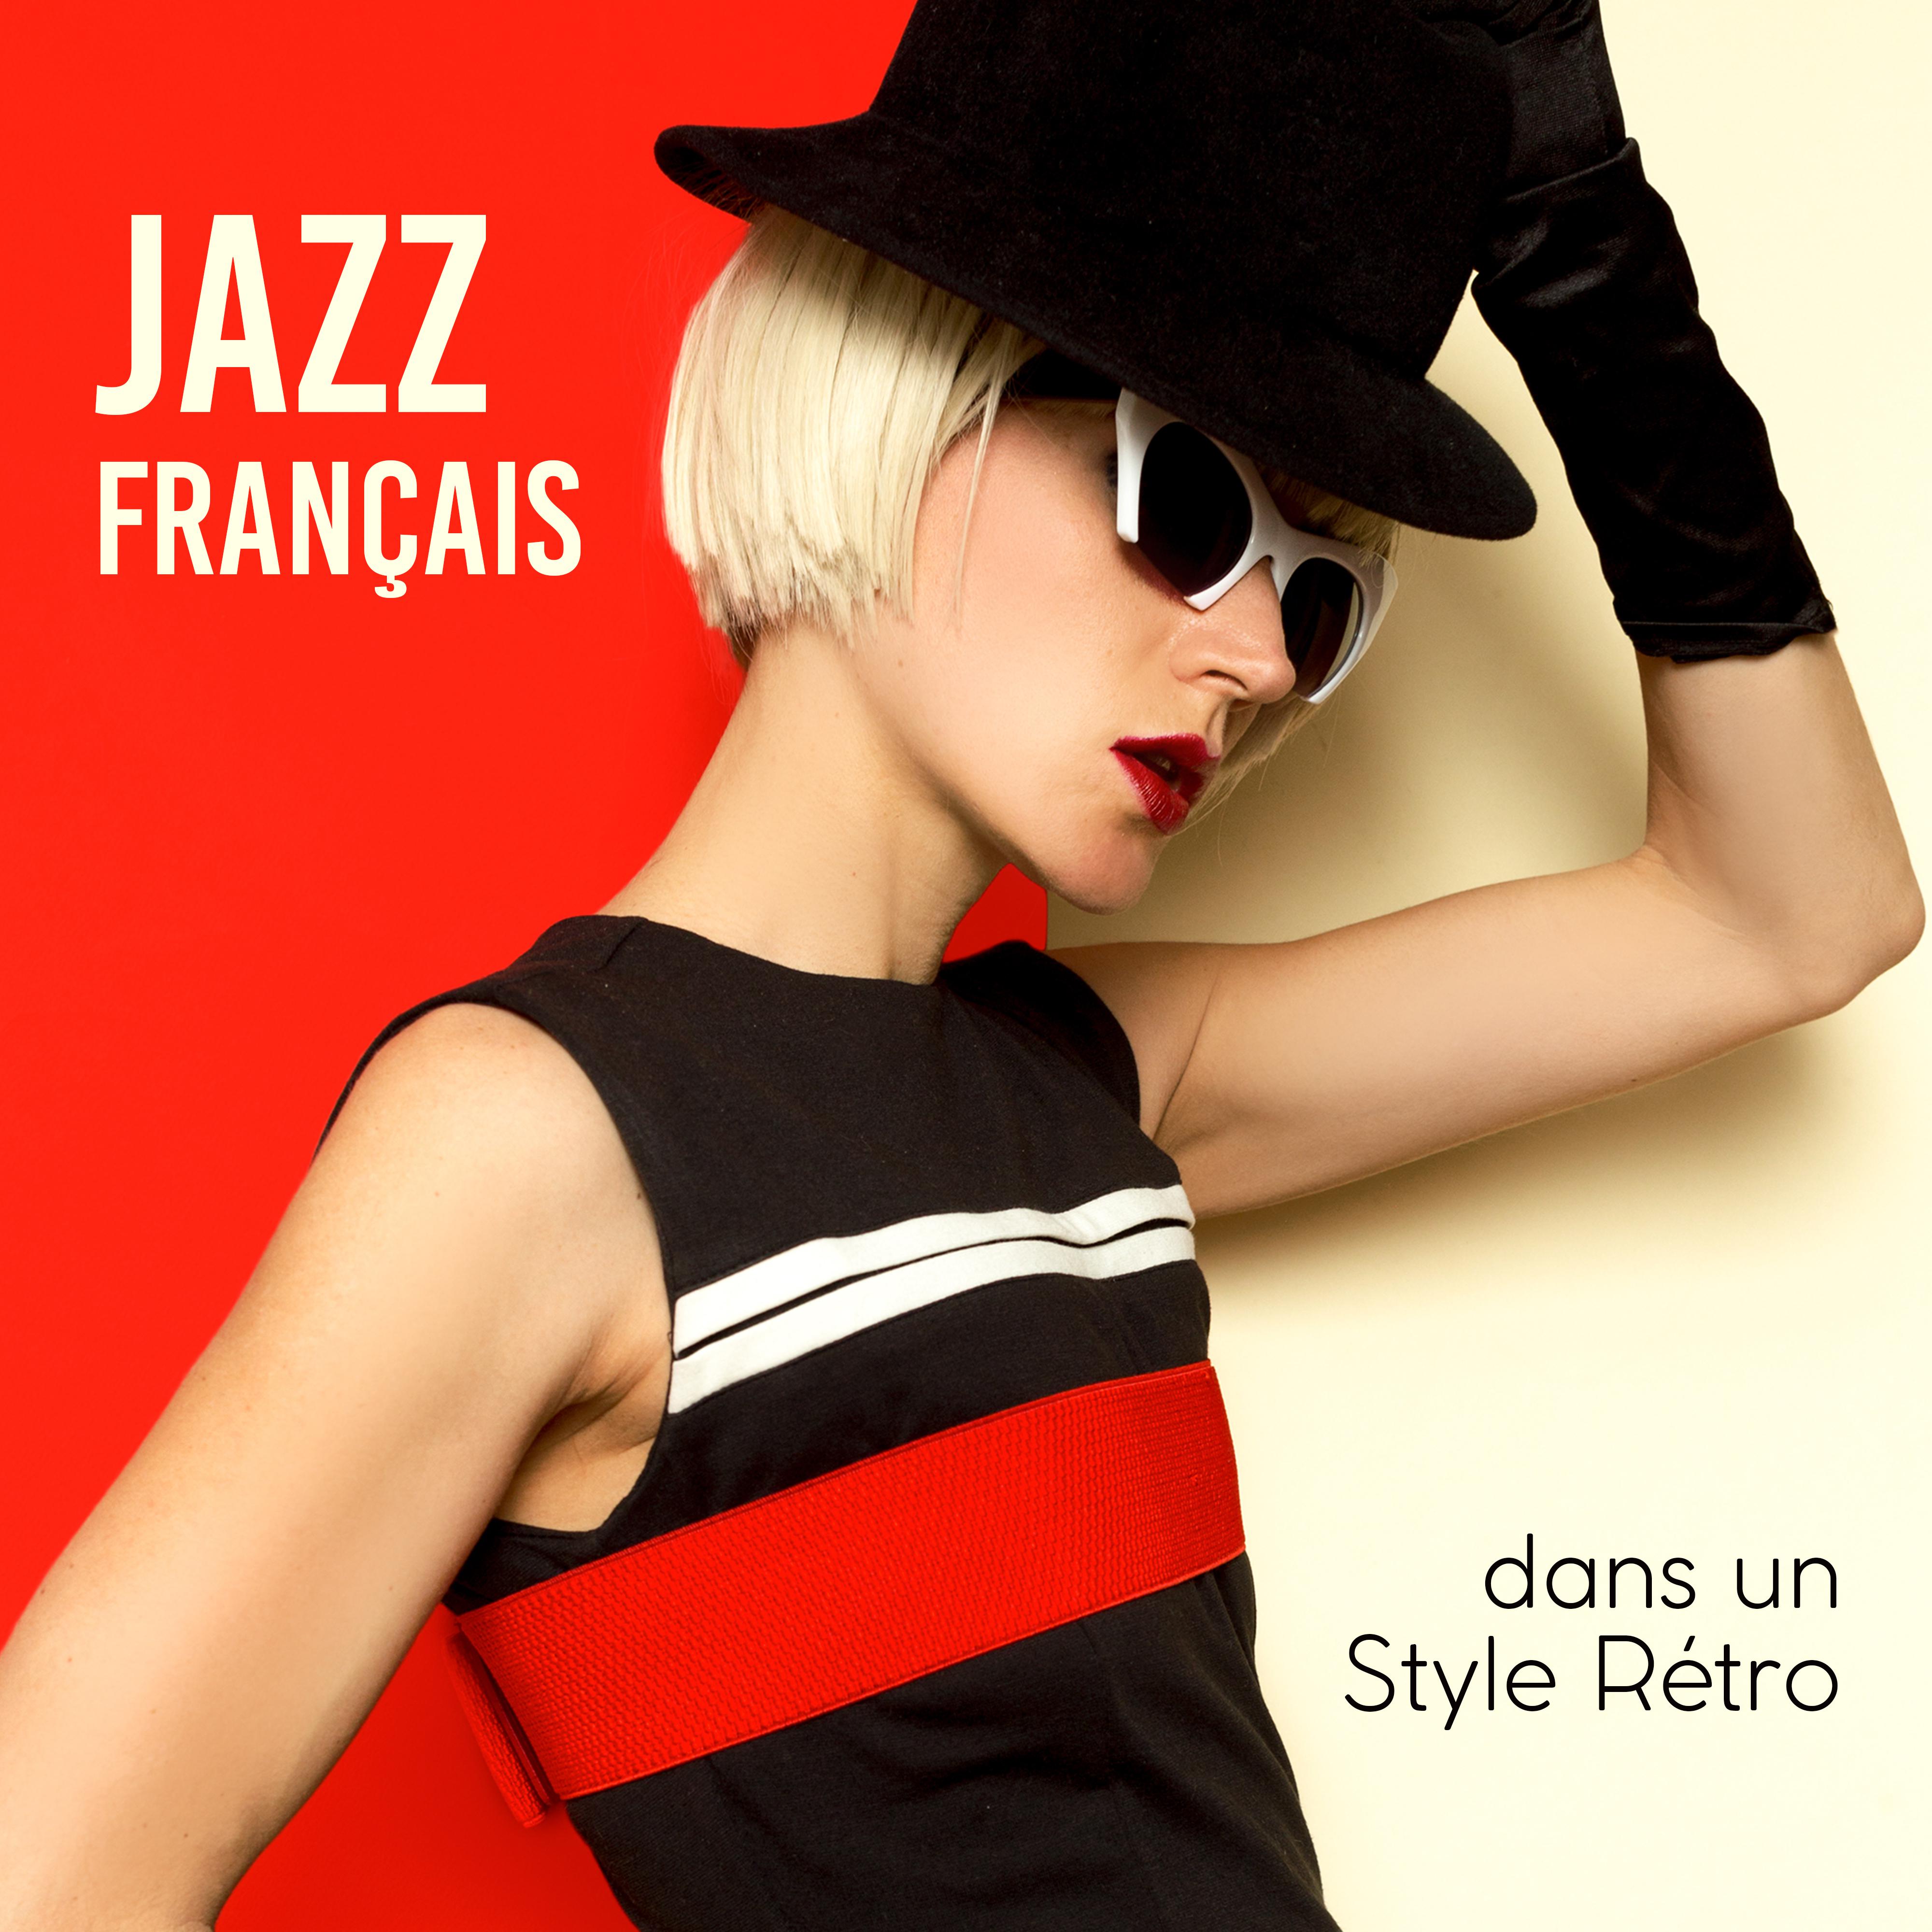 Jazz Fran ais dans un Style Re tro